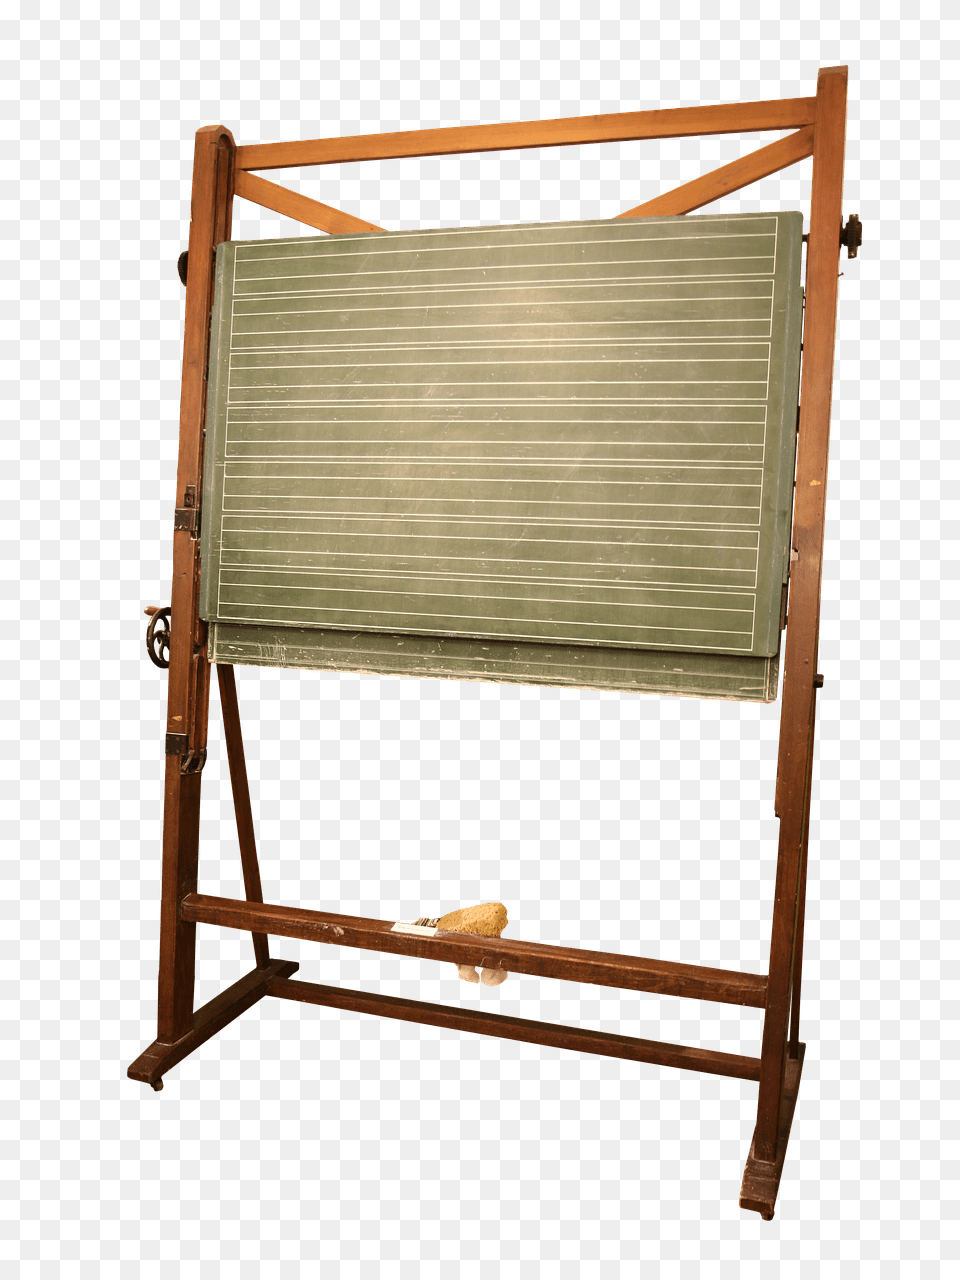 School Vintage Blackboard Transparent, Crib, Furniture, Infant Bed Png Image